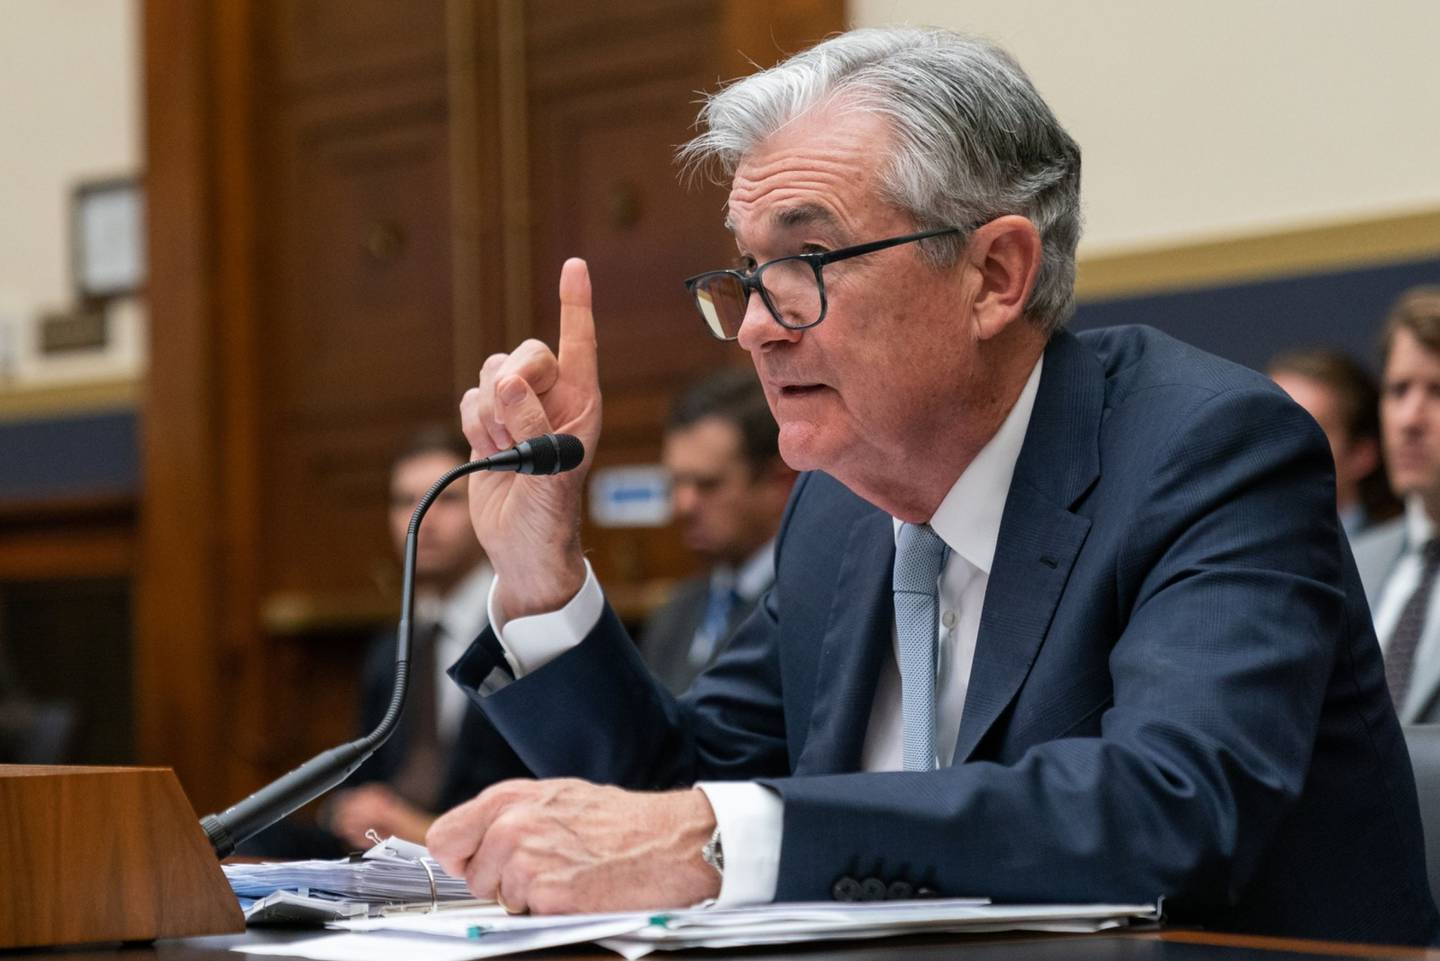 Los últimos dos días se ha visto una especie de tensa calma en los mercados de Estados Unidos, mientras los inversionistas esperan las señales que entregue Powell.